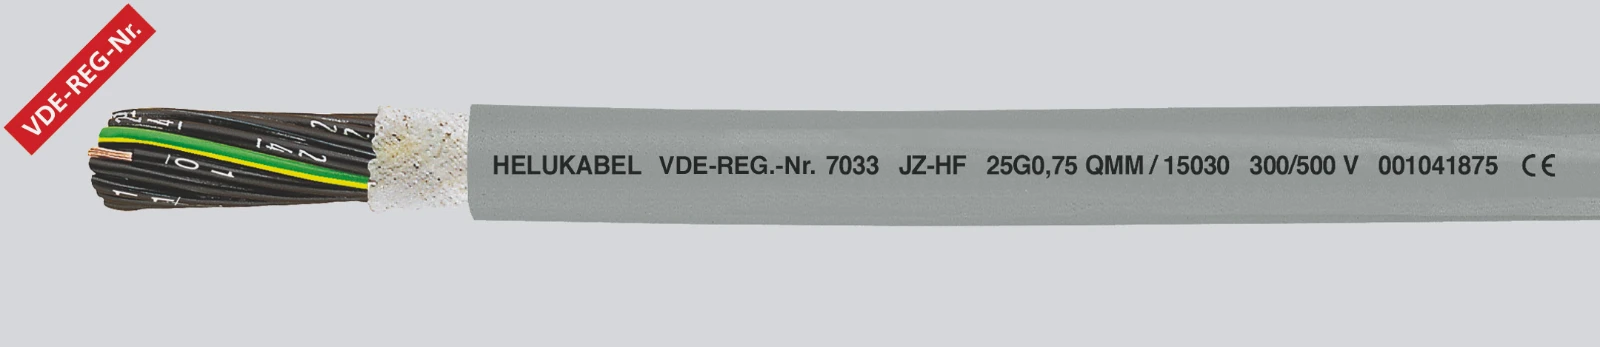 Helukabel Voedingskabel < 1 kV, voor beweegbare toepassingen JZ-HF